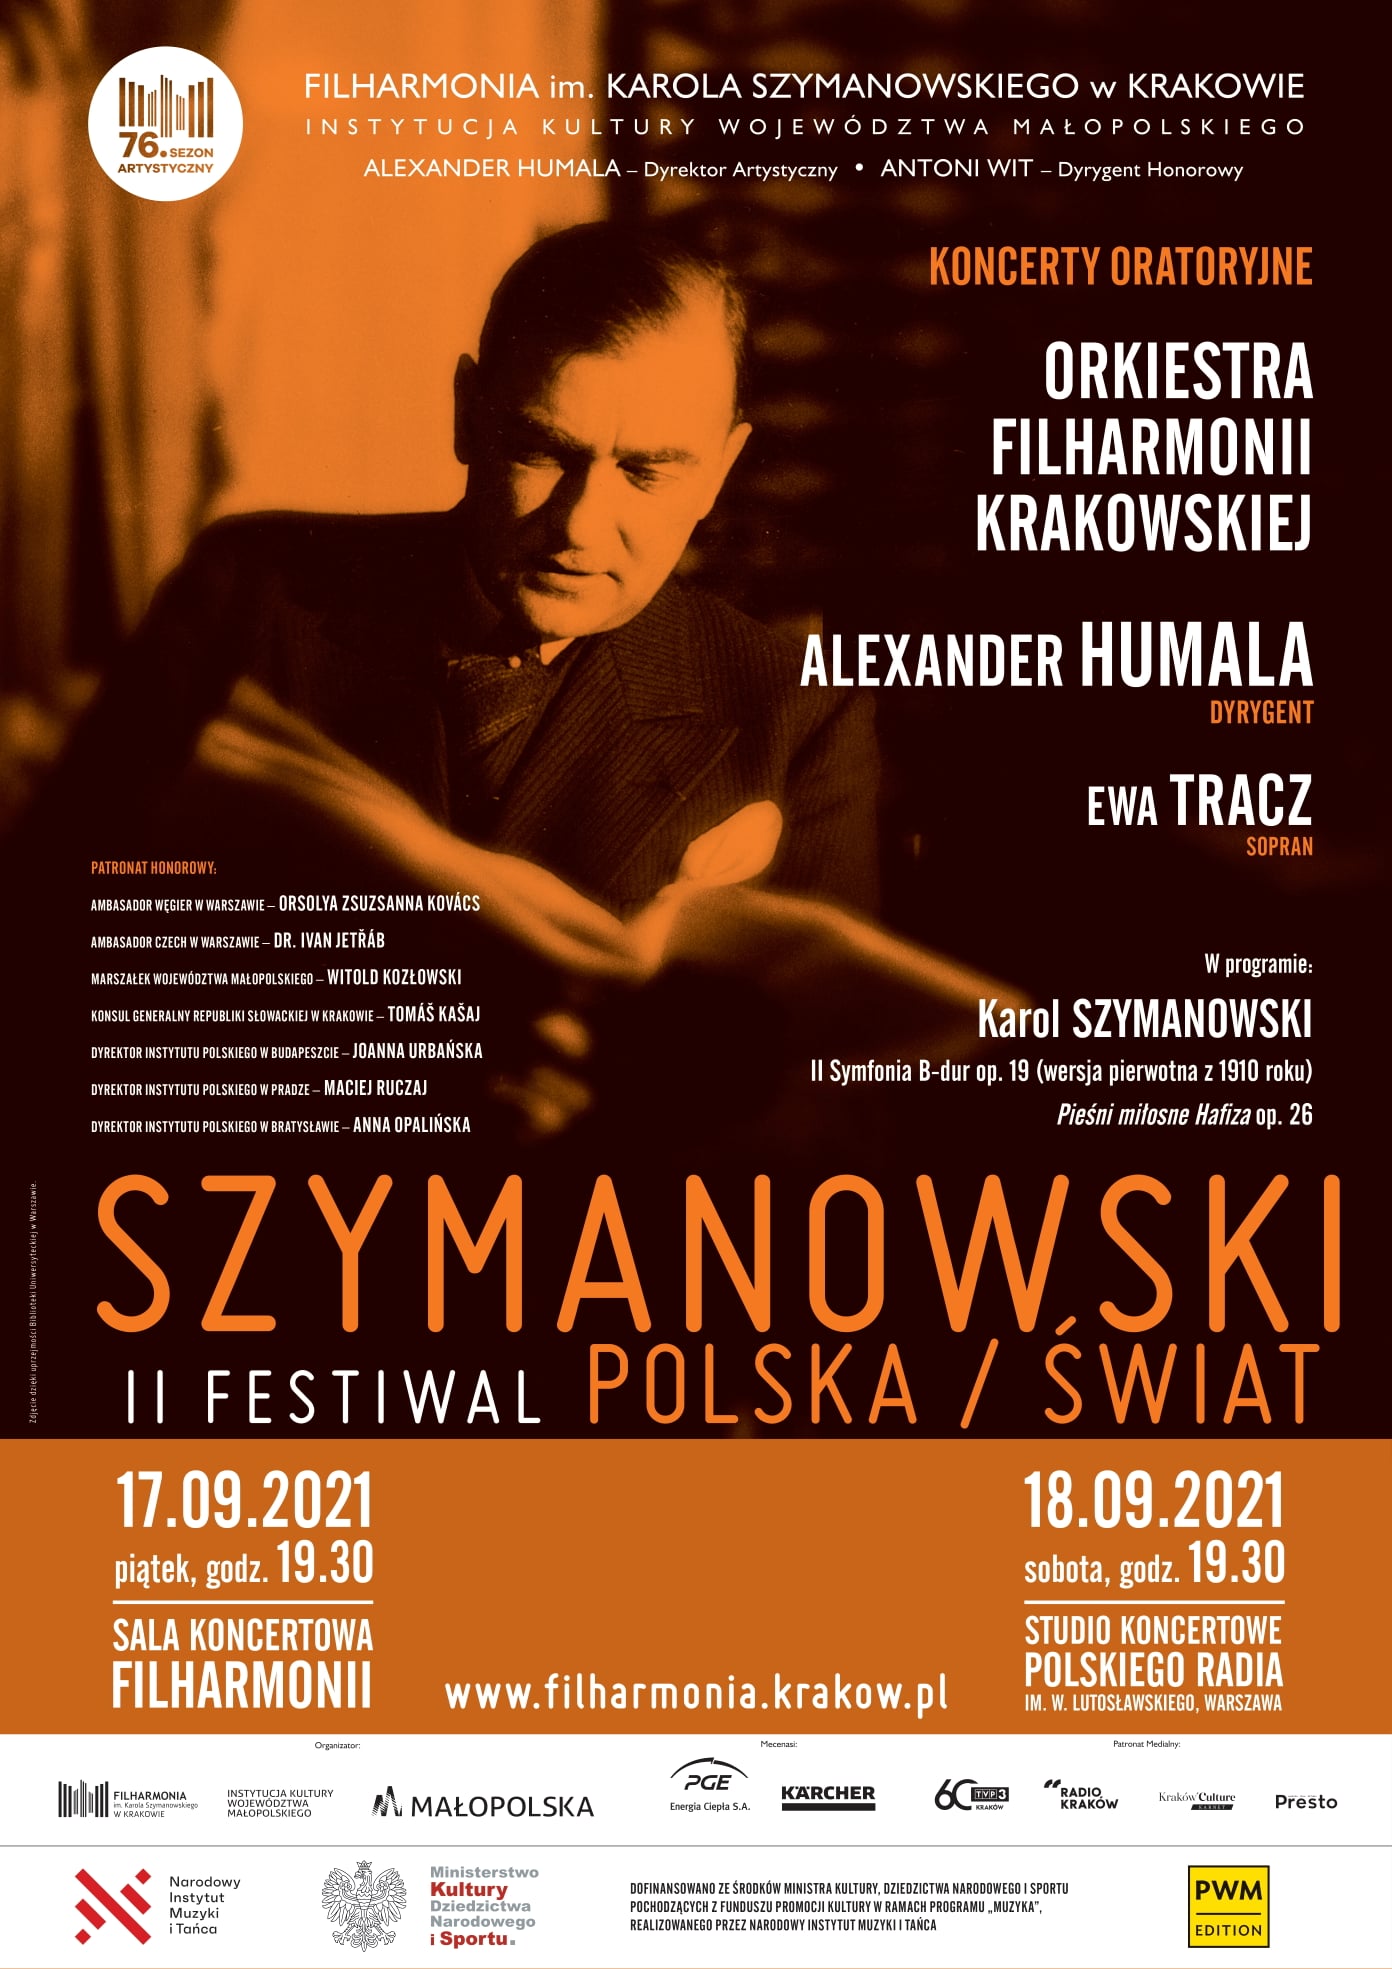 Festiwal Szymanowski/Polska/Świat